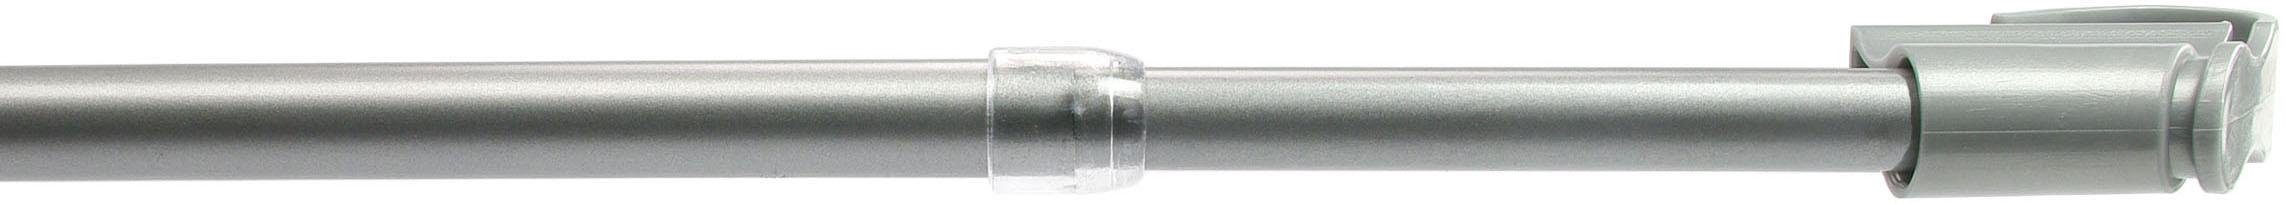 Scheibenstange, Liedeco, Ø 12 mm, 1-läufig, ausziehbar, ohne Bohren, geklemmt, Kunststoff, Metall